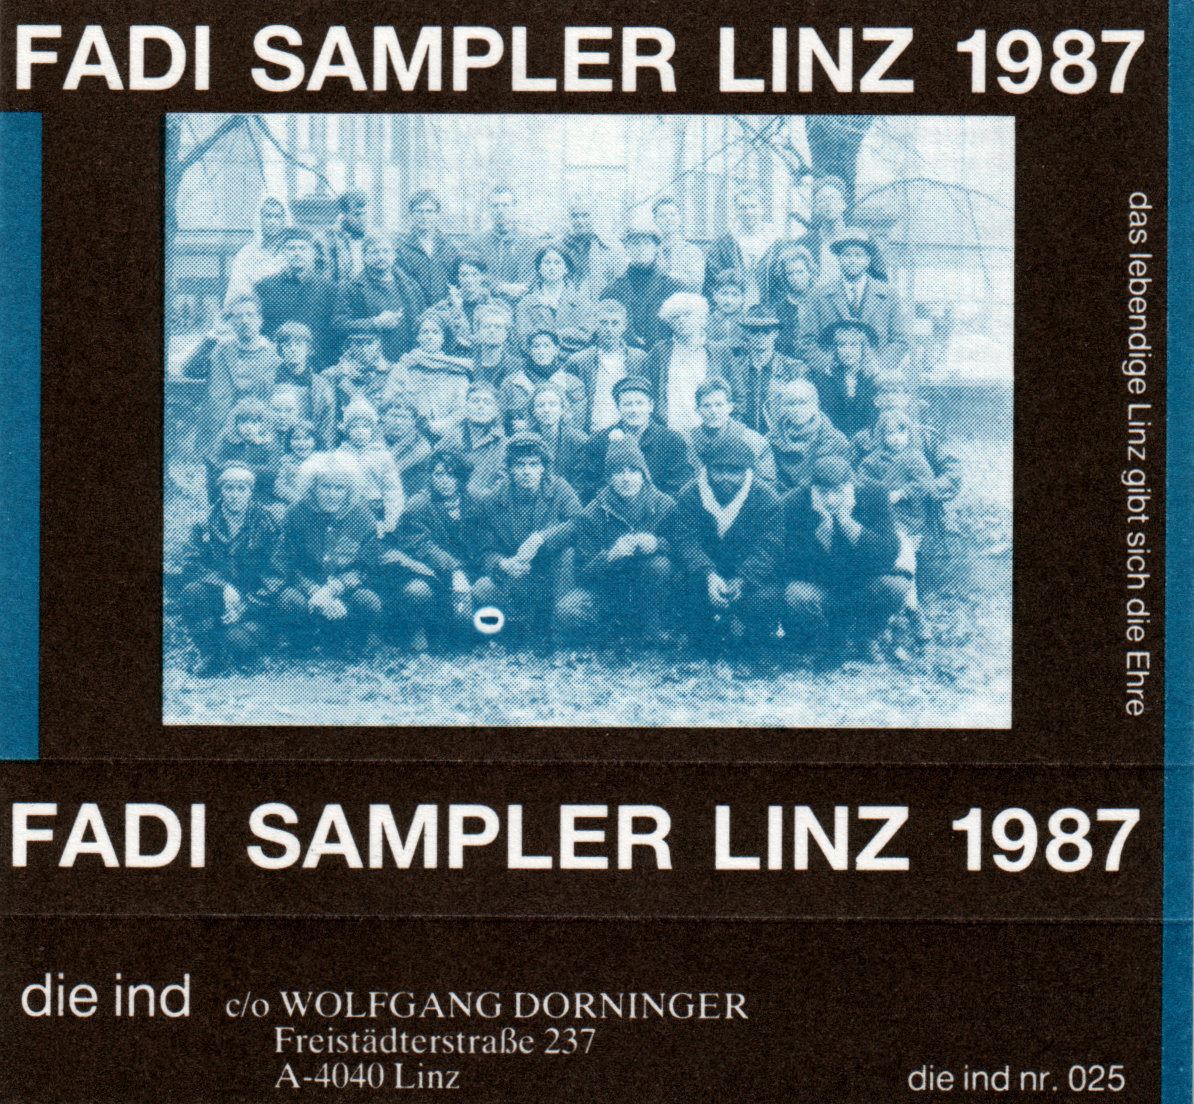 Compilation: "Fadi The Sampler Linz #4 " - Die Ind